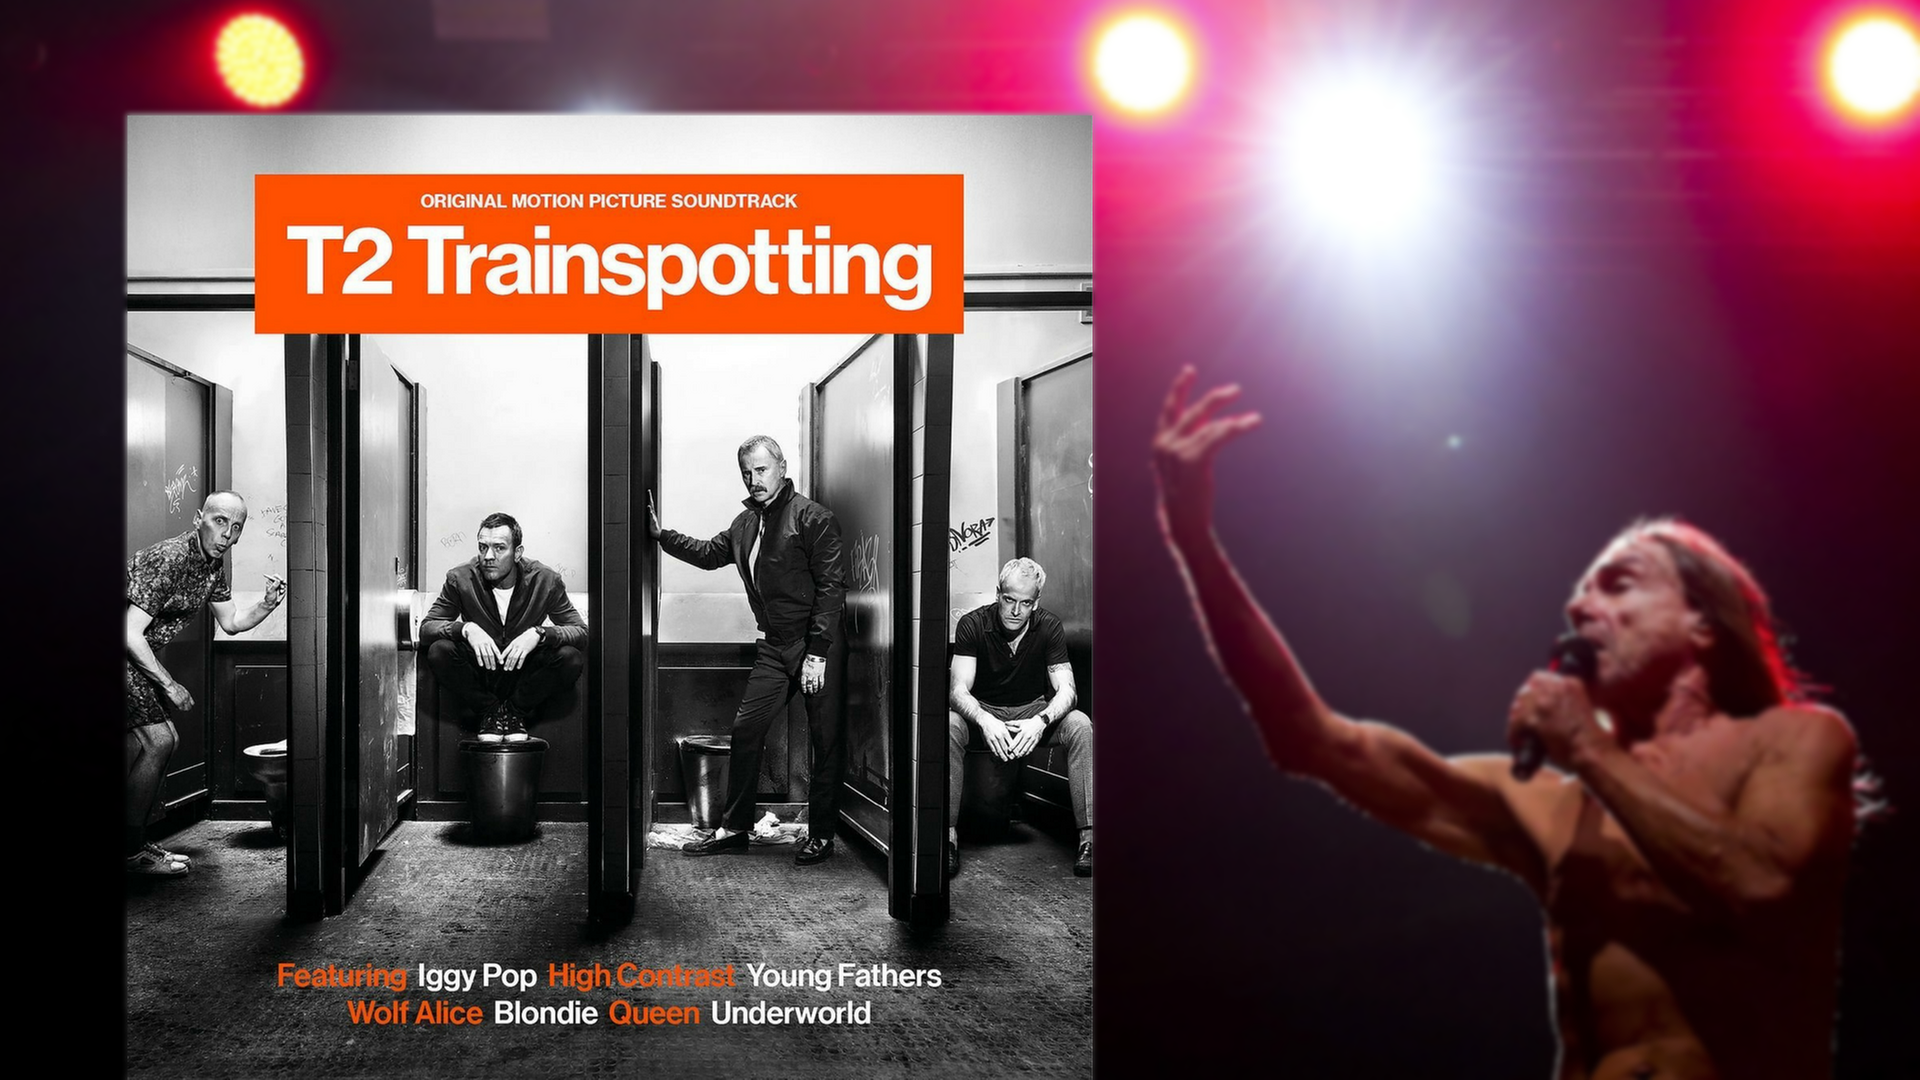 Das Plattencover zum Soundtrack von "T2 Trainspotting" - rechts: der Musiker Iggy Pop.